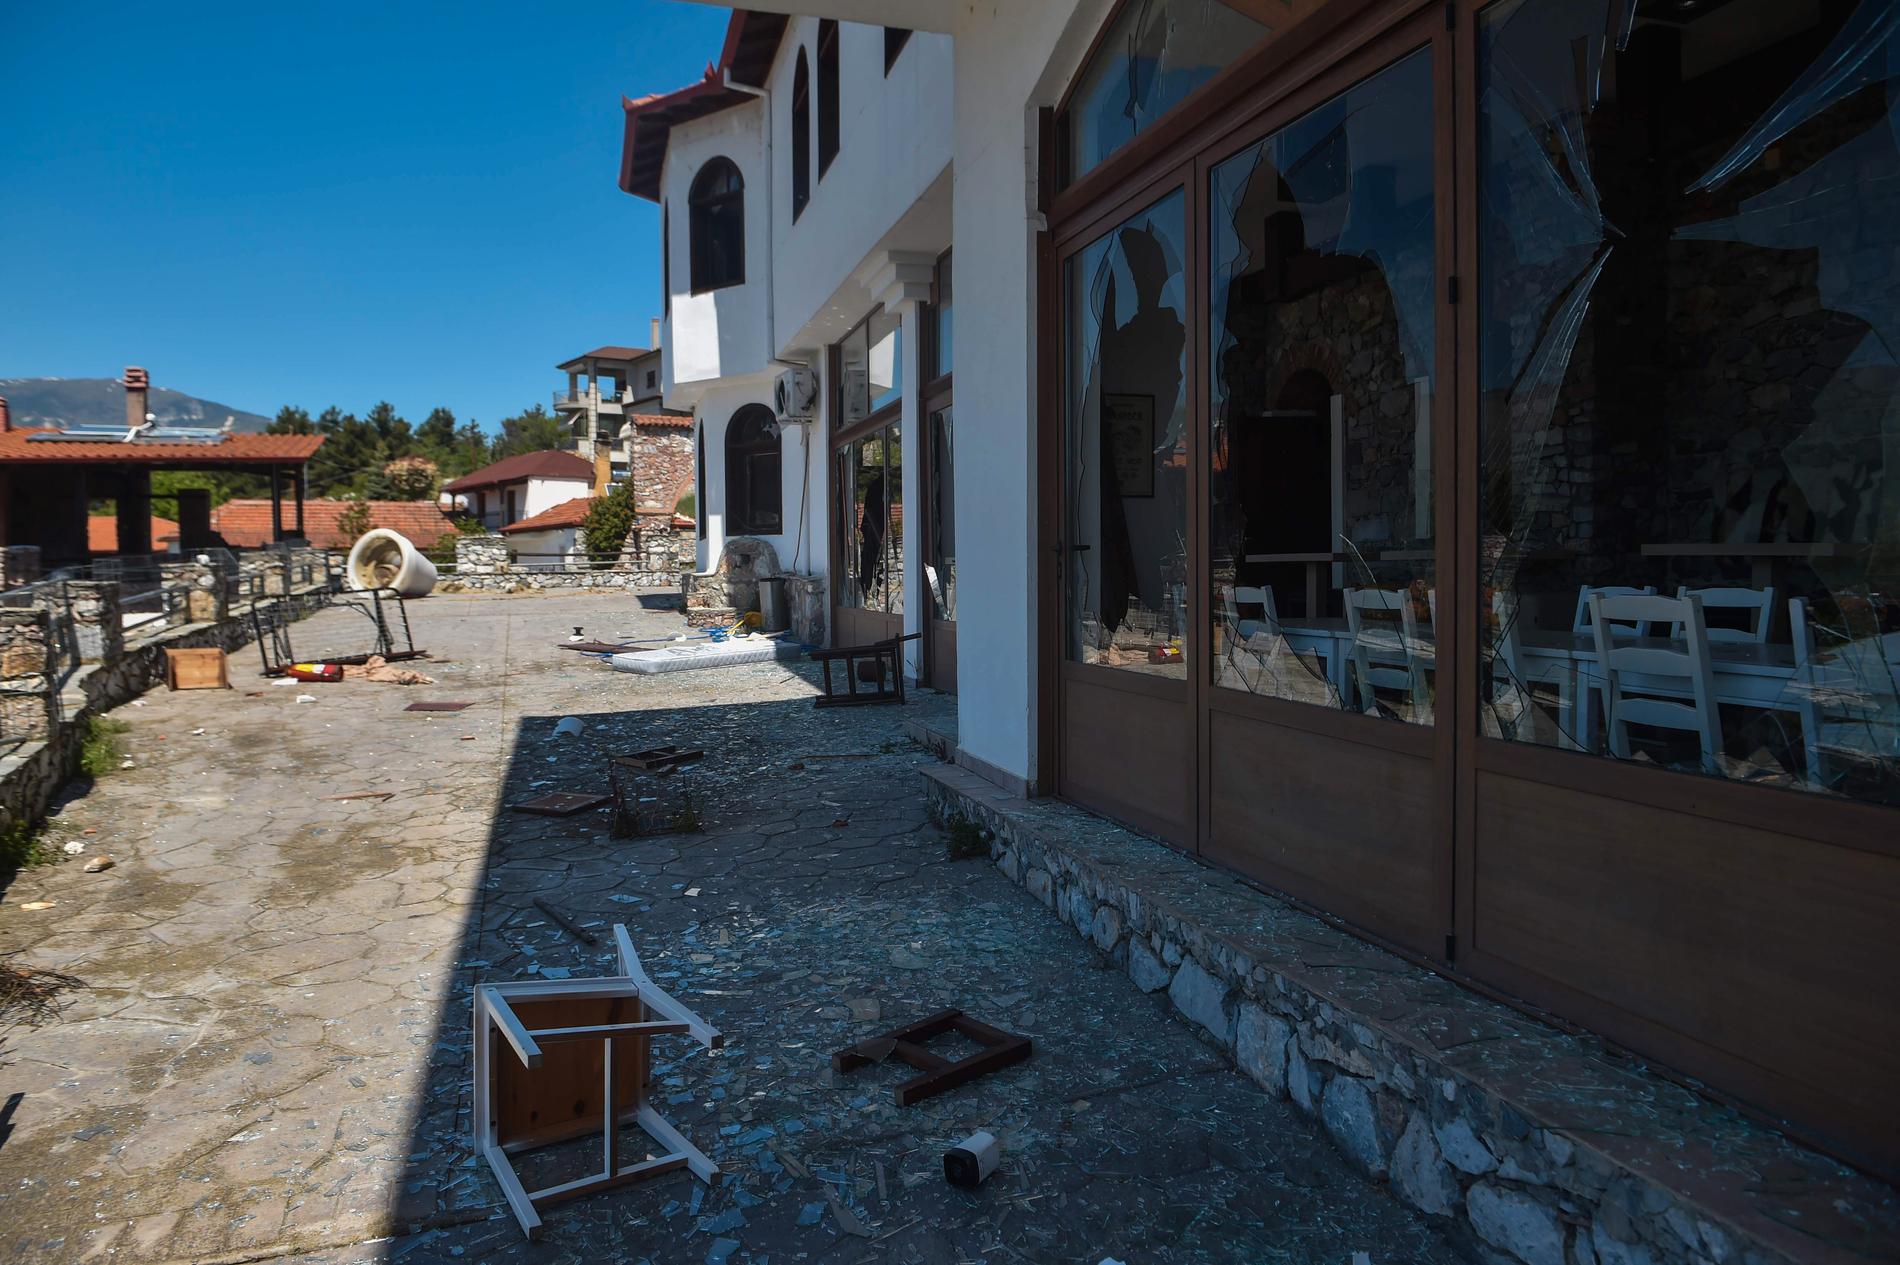 Det vandaliserade hotellet i den grekiska byn Árnissa. Bild från i fredags.